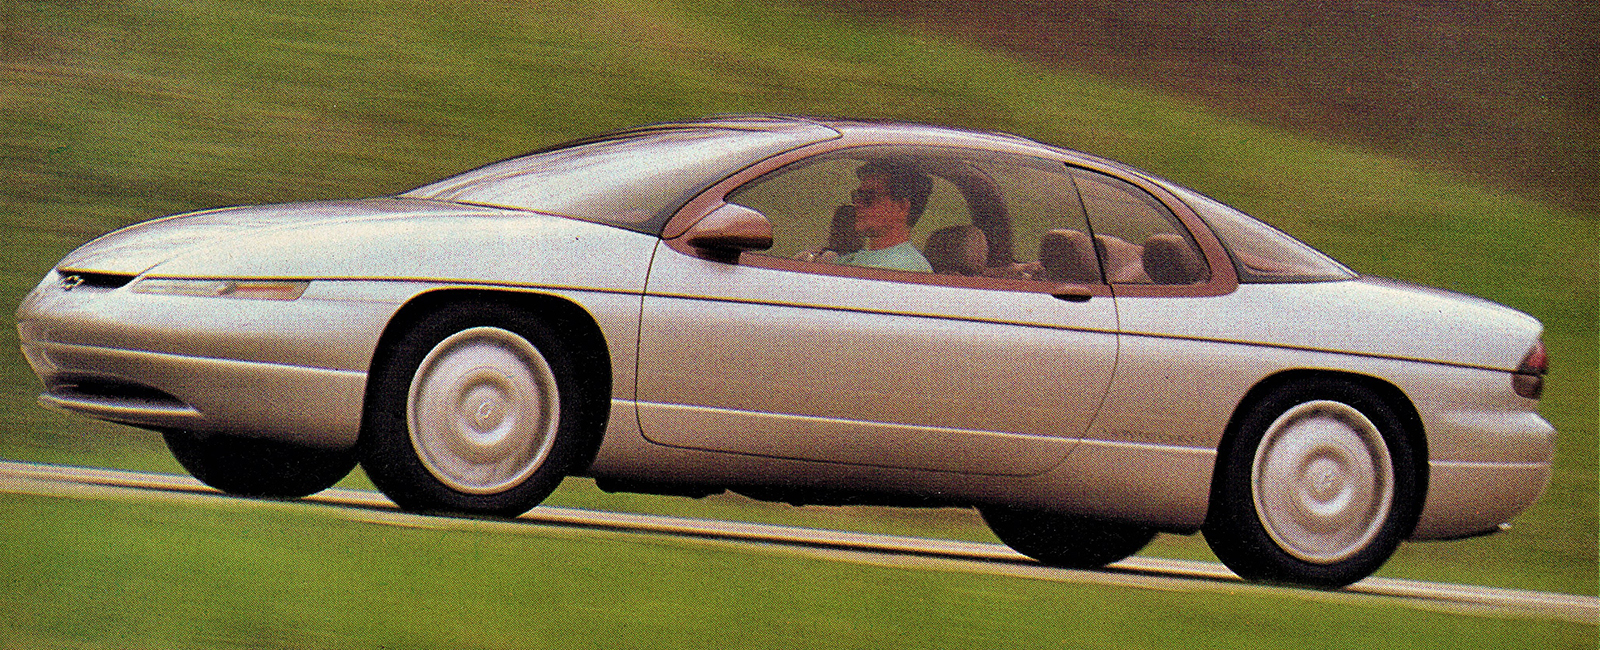 1992 Chevrolet Concept Monte Carlo - ÐšÐ¾Ð½Ñ†ÐµÐ¿Ñ‚Ñ‹.